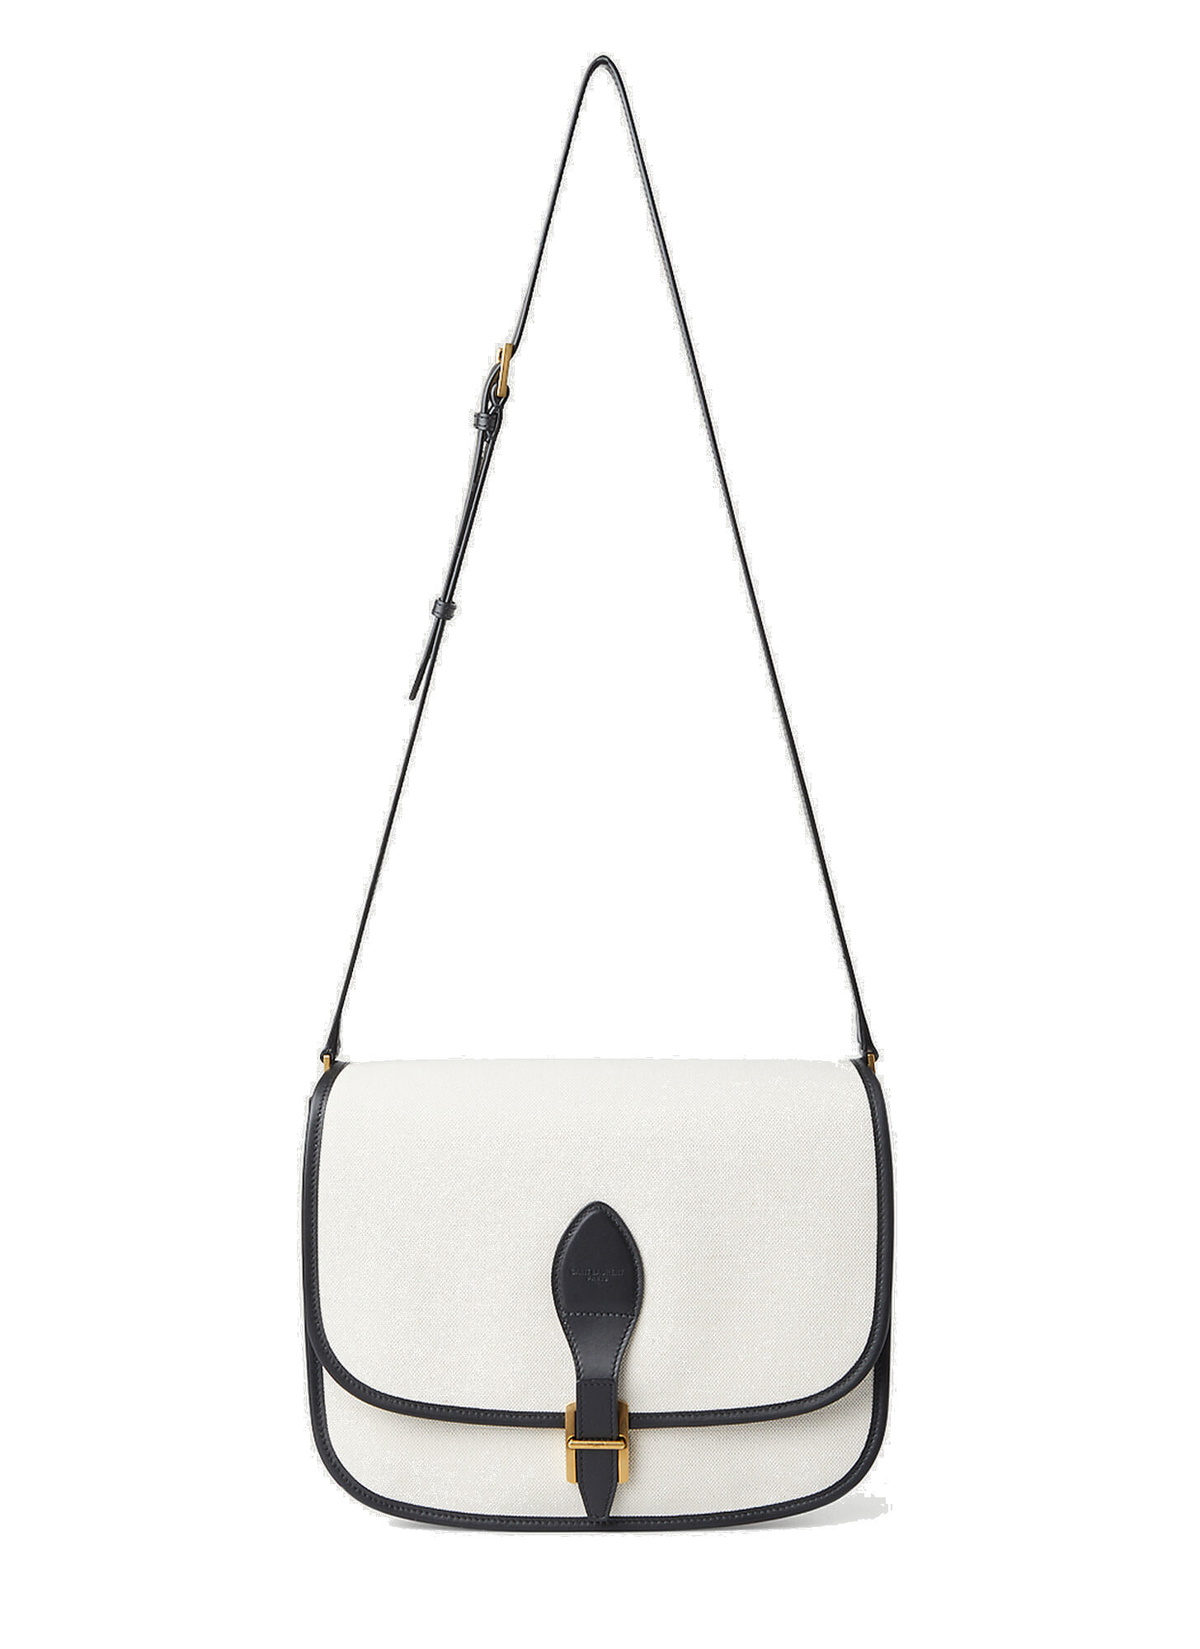 LN-CC Saint Laurent Francoise Medium Satchel Shoulder Bag in White 1870.00